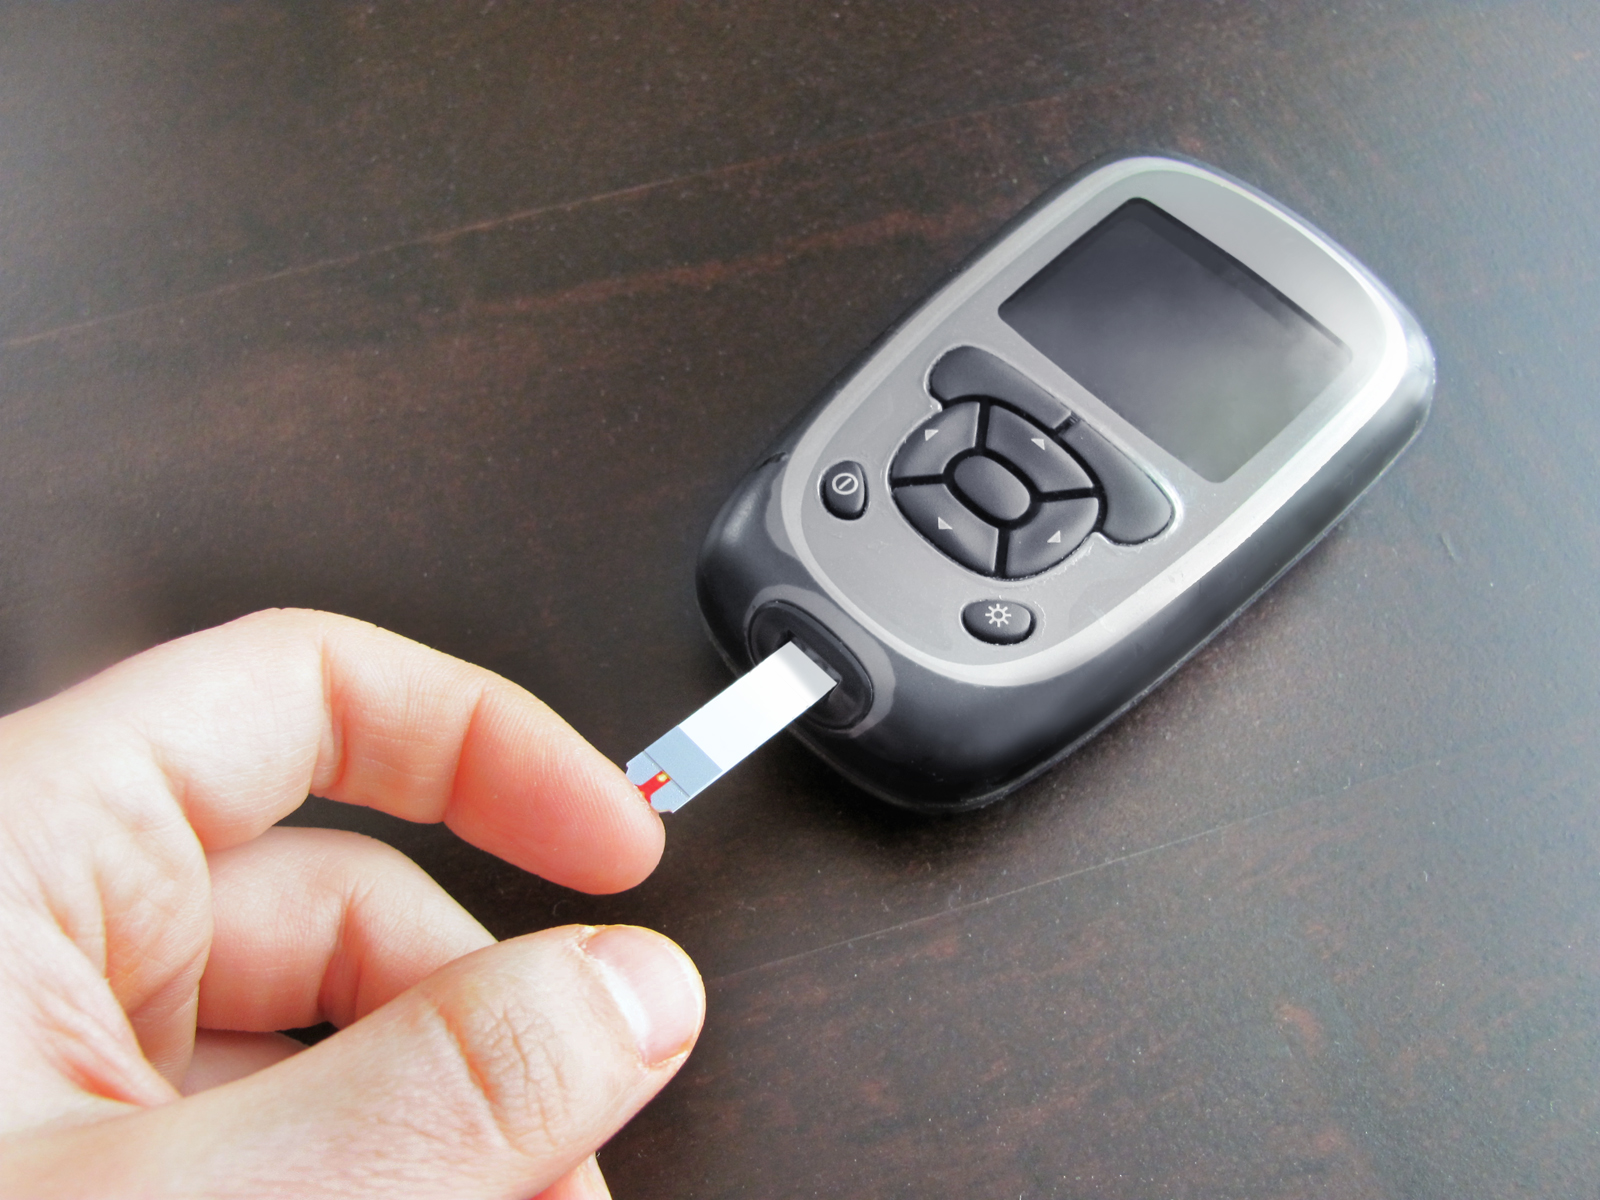 TO YOUR HEALTH: Take prediabetes seriously